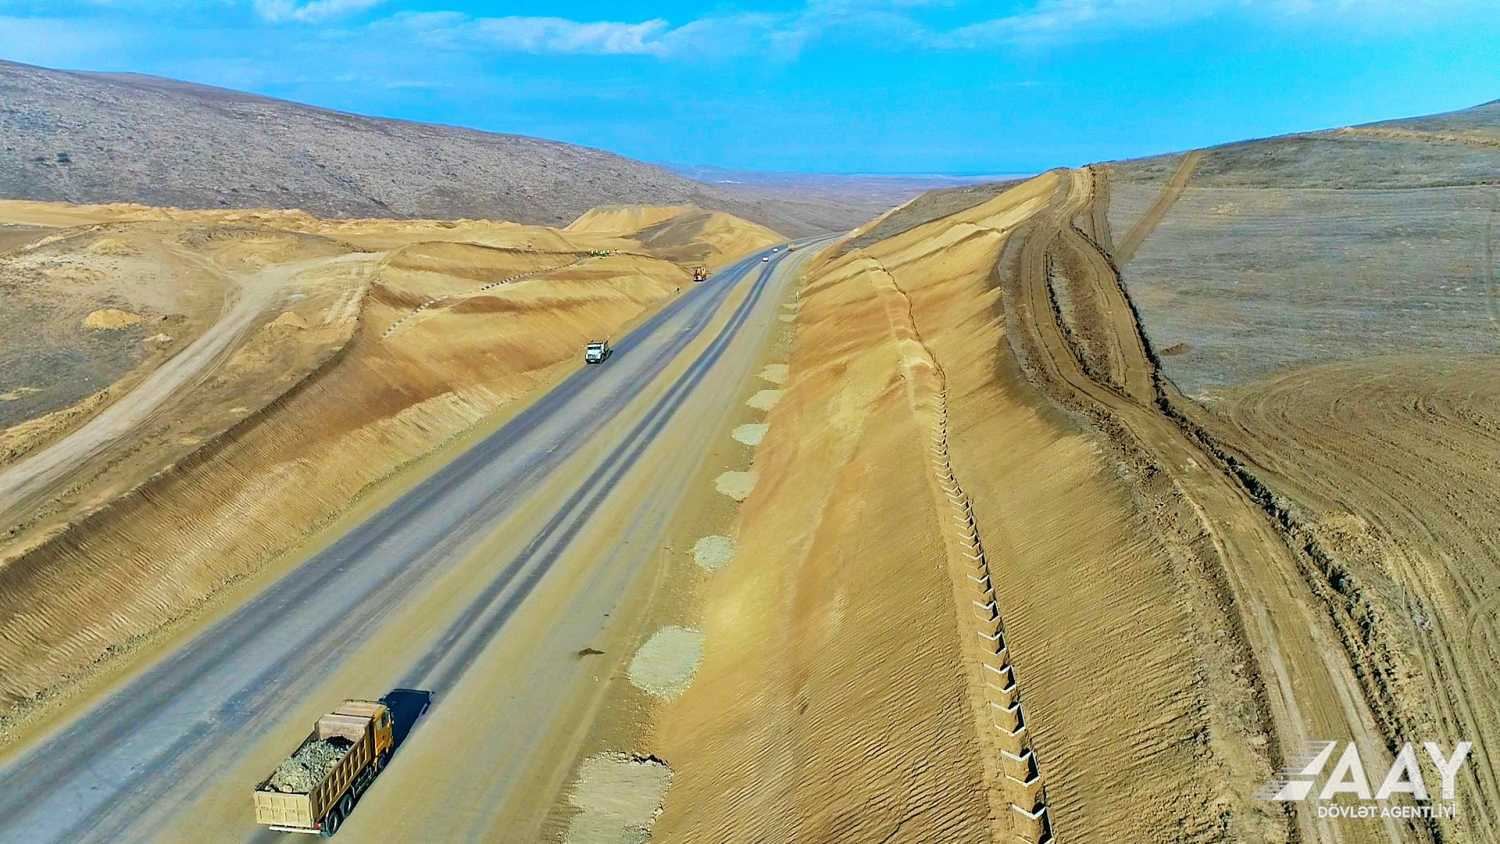 Строительство автодороги Агдам-Физули продолжается быстрыми темпами (ФОТО/ВИДЕО)